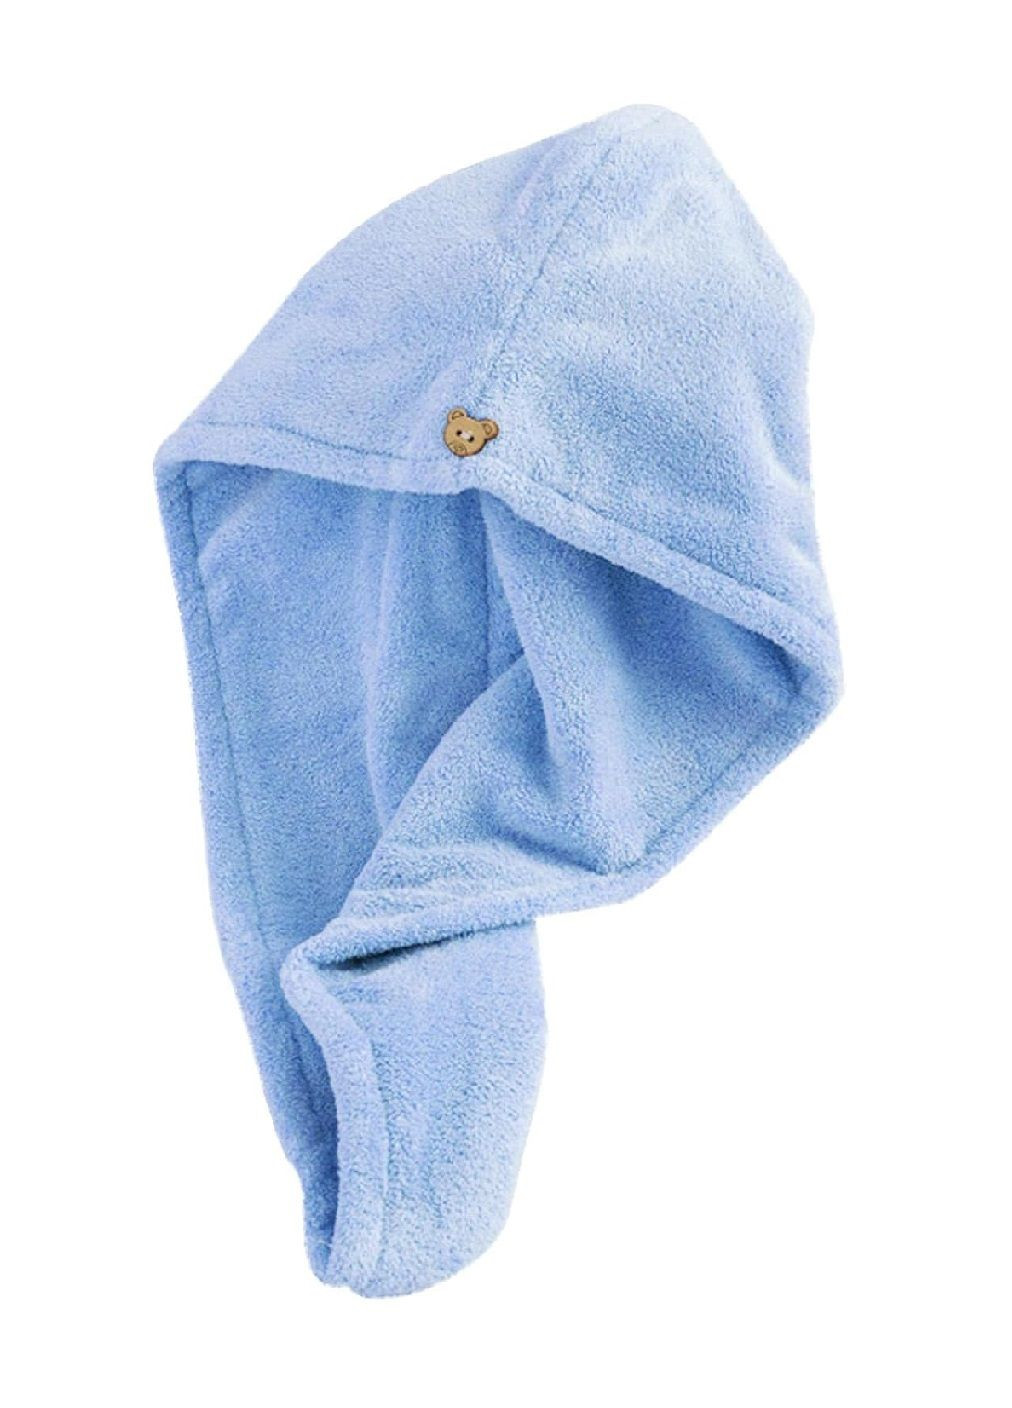 Unbranded рушник чалма для сушіння голови волосся після купання в сауні душі ванній мікрофібра 60х26 см (476911-prob) світло-блакитний однотонний світло-блакитний виробництво -